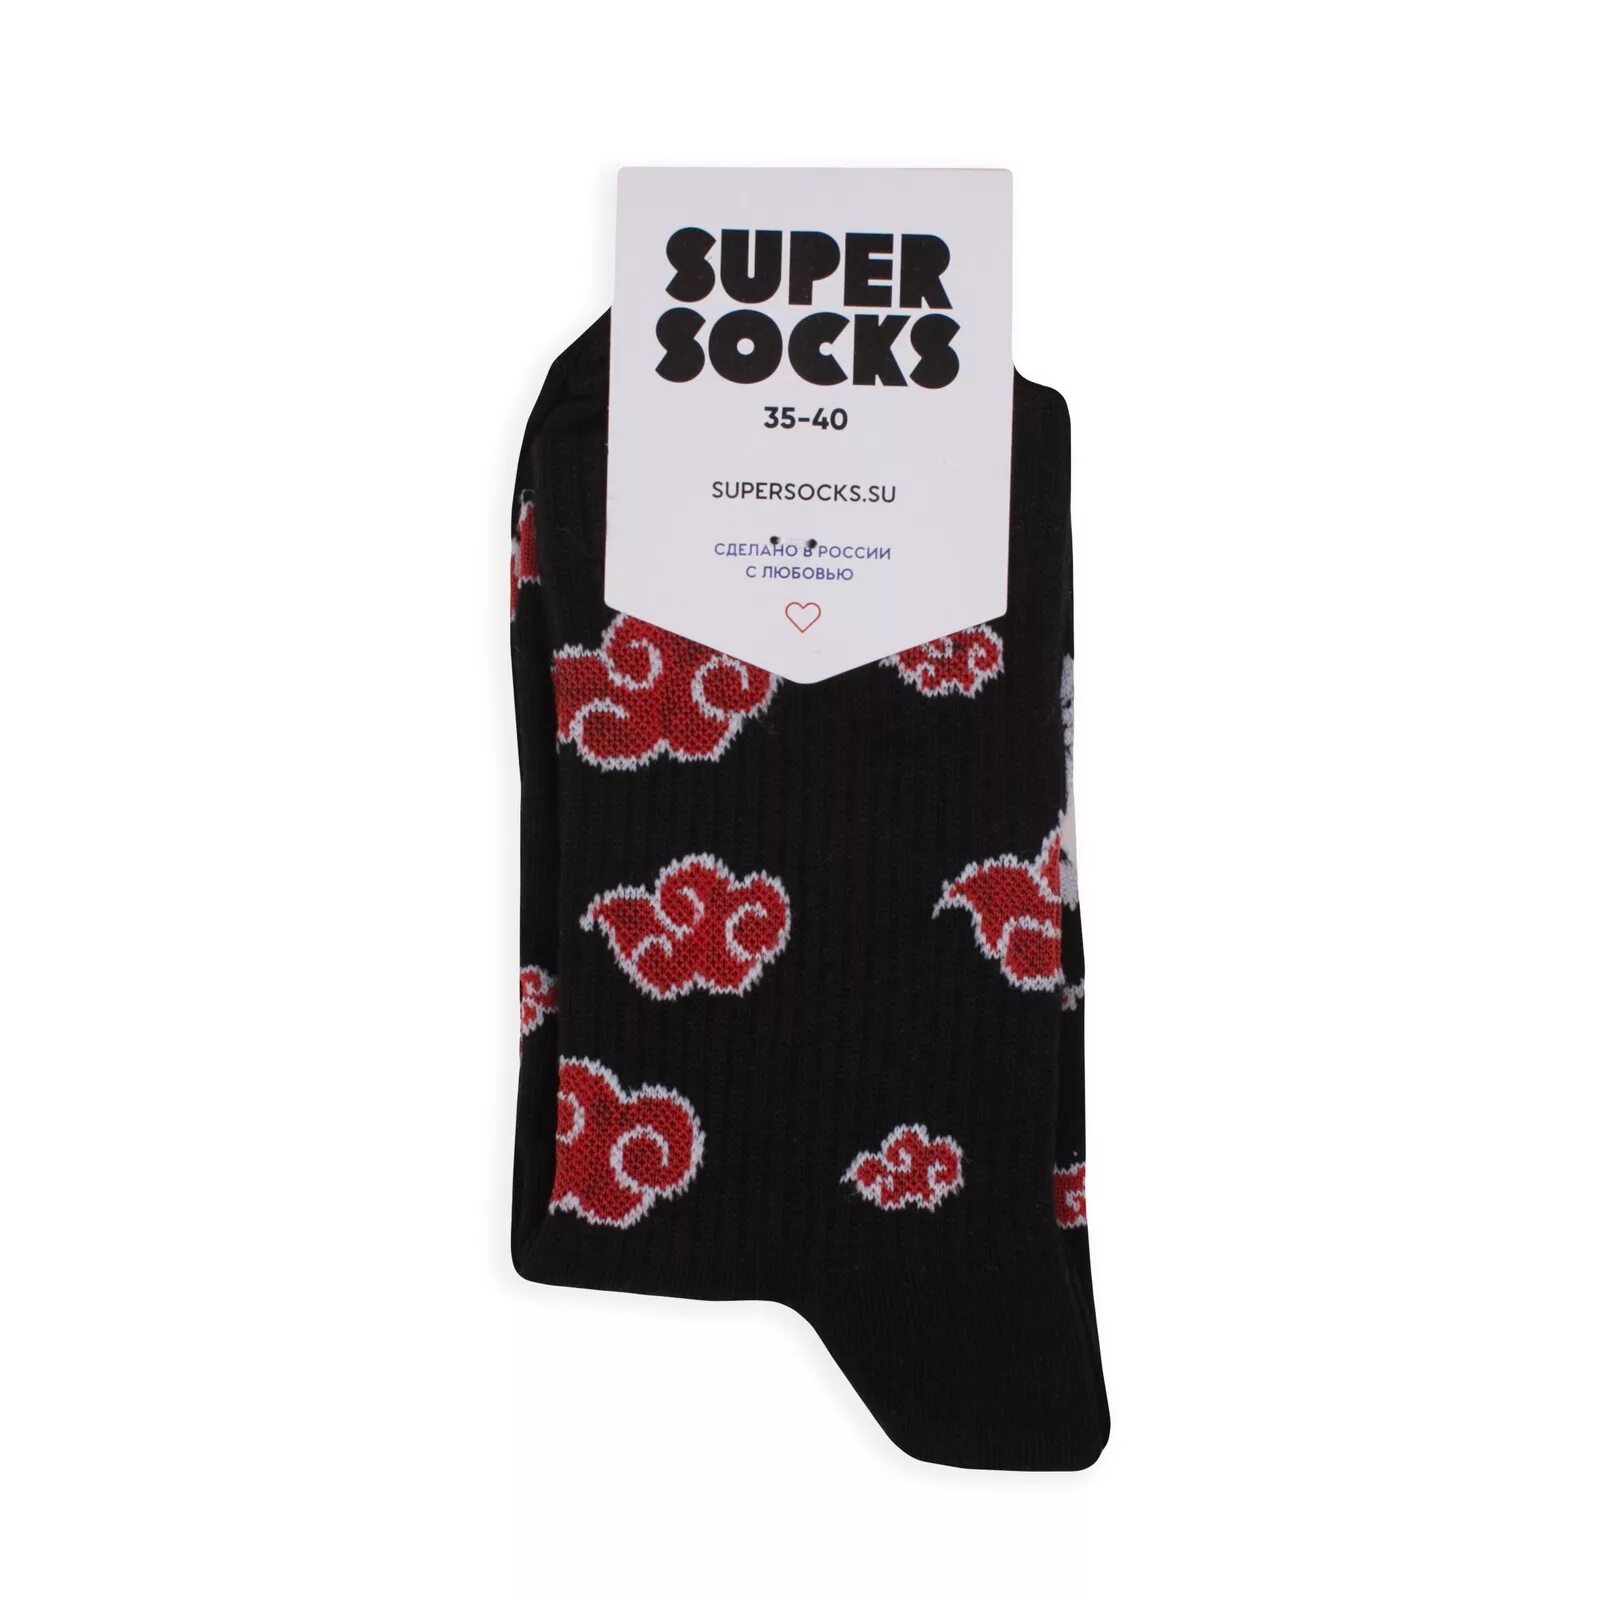 Купить носки socks. Супер носки. Носки супер Сокс. Носки Акацуки. Super Socks носки чёрные.